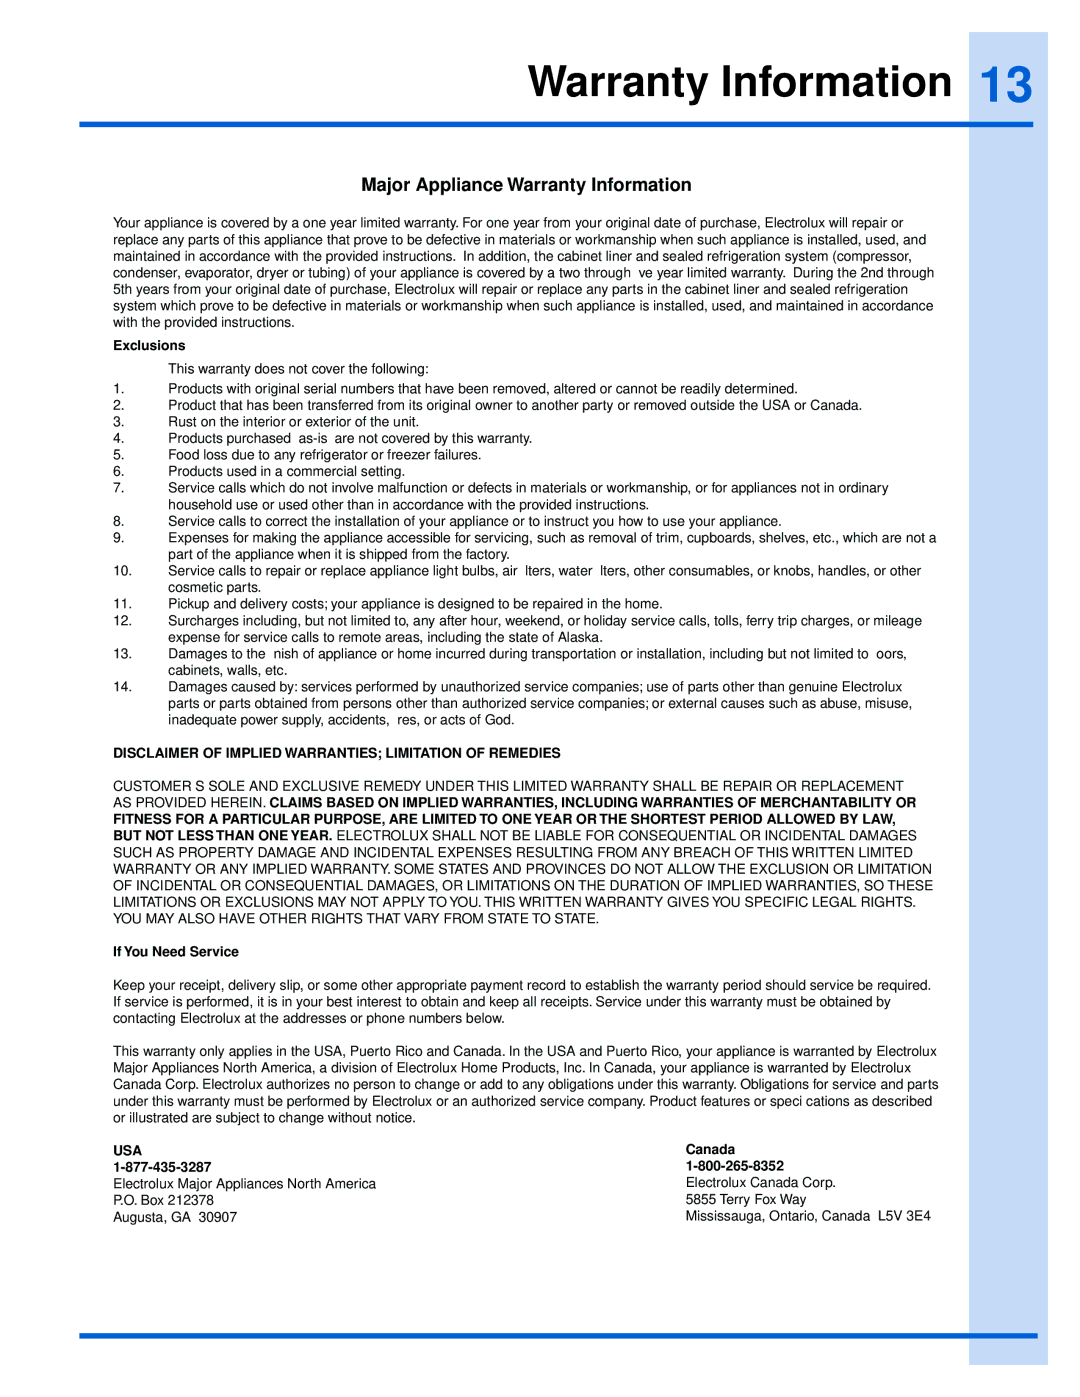 Electrolux EI24WC75HS manual Major Appliance Warranty Information 